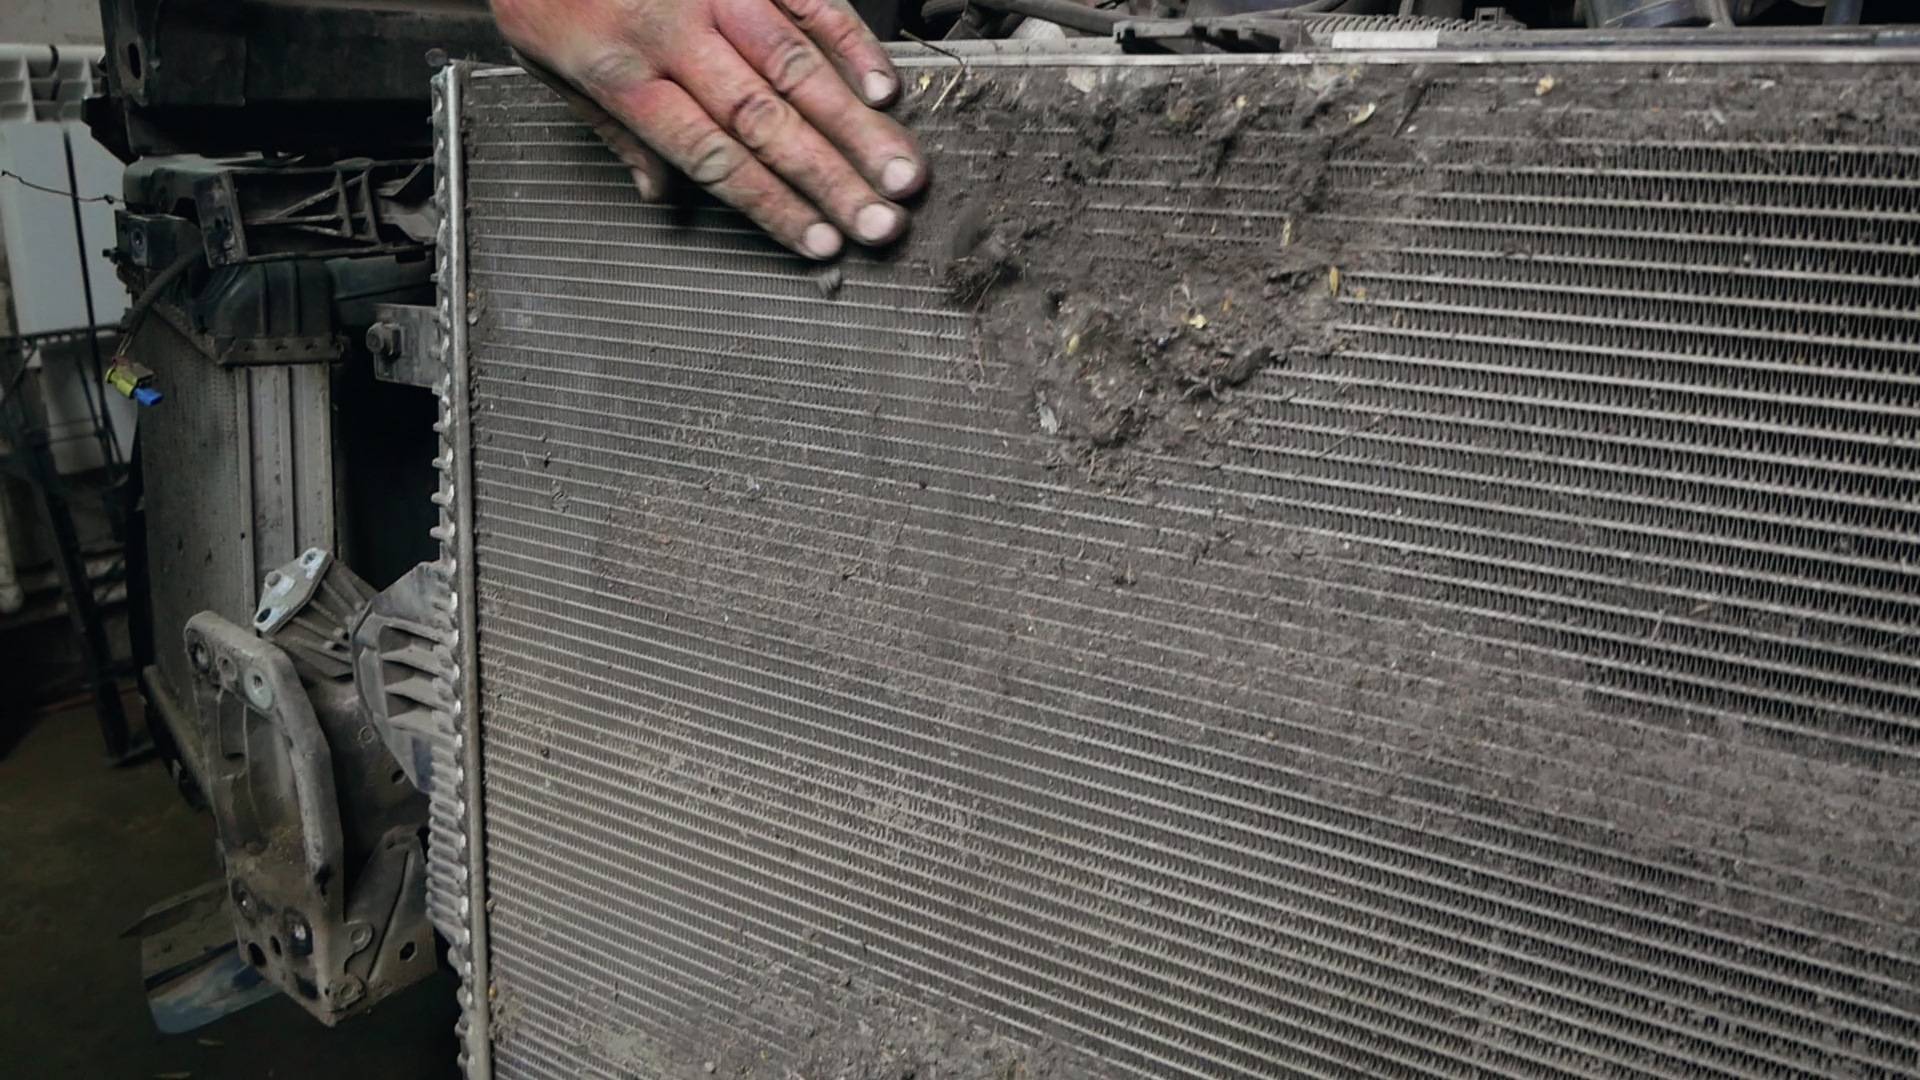 Как очистить радиатор автомобиля снаружи: Сильное загрязнение наружных поверхностей радиаторов